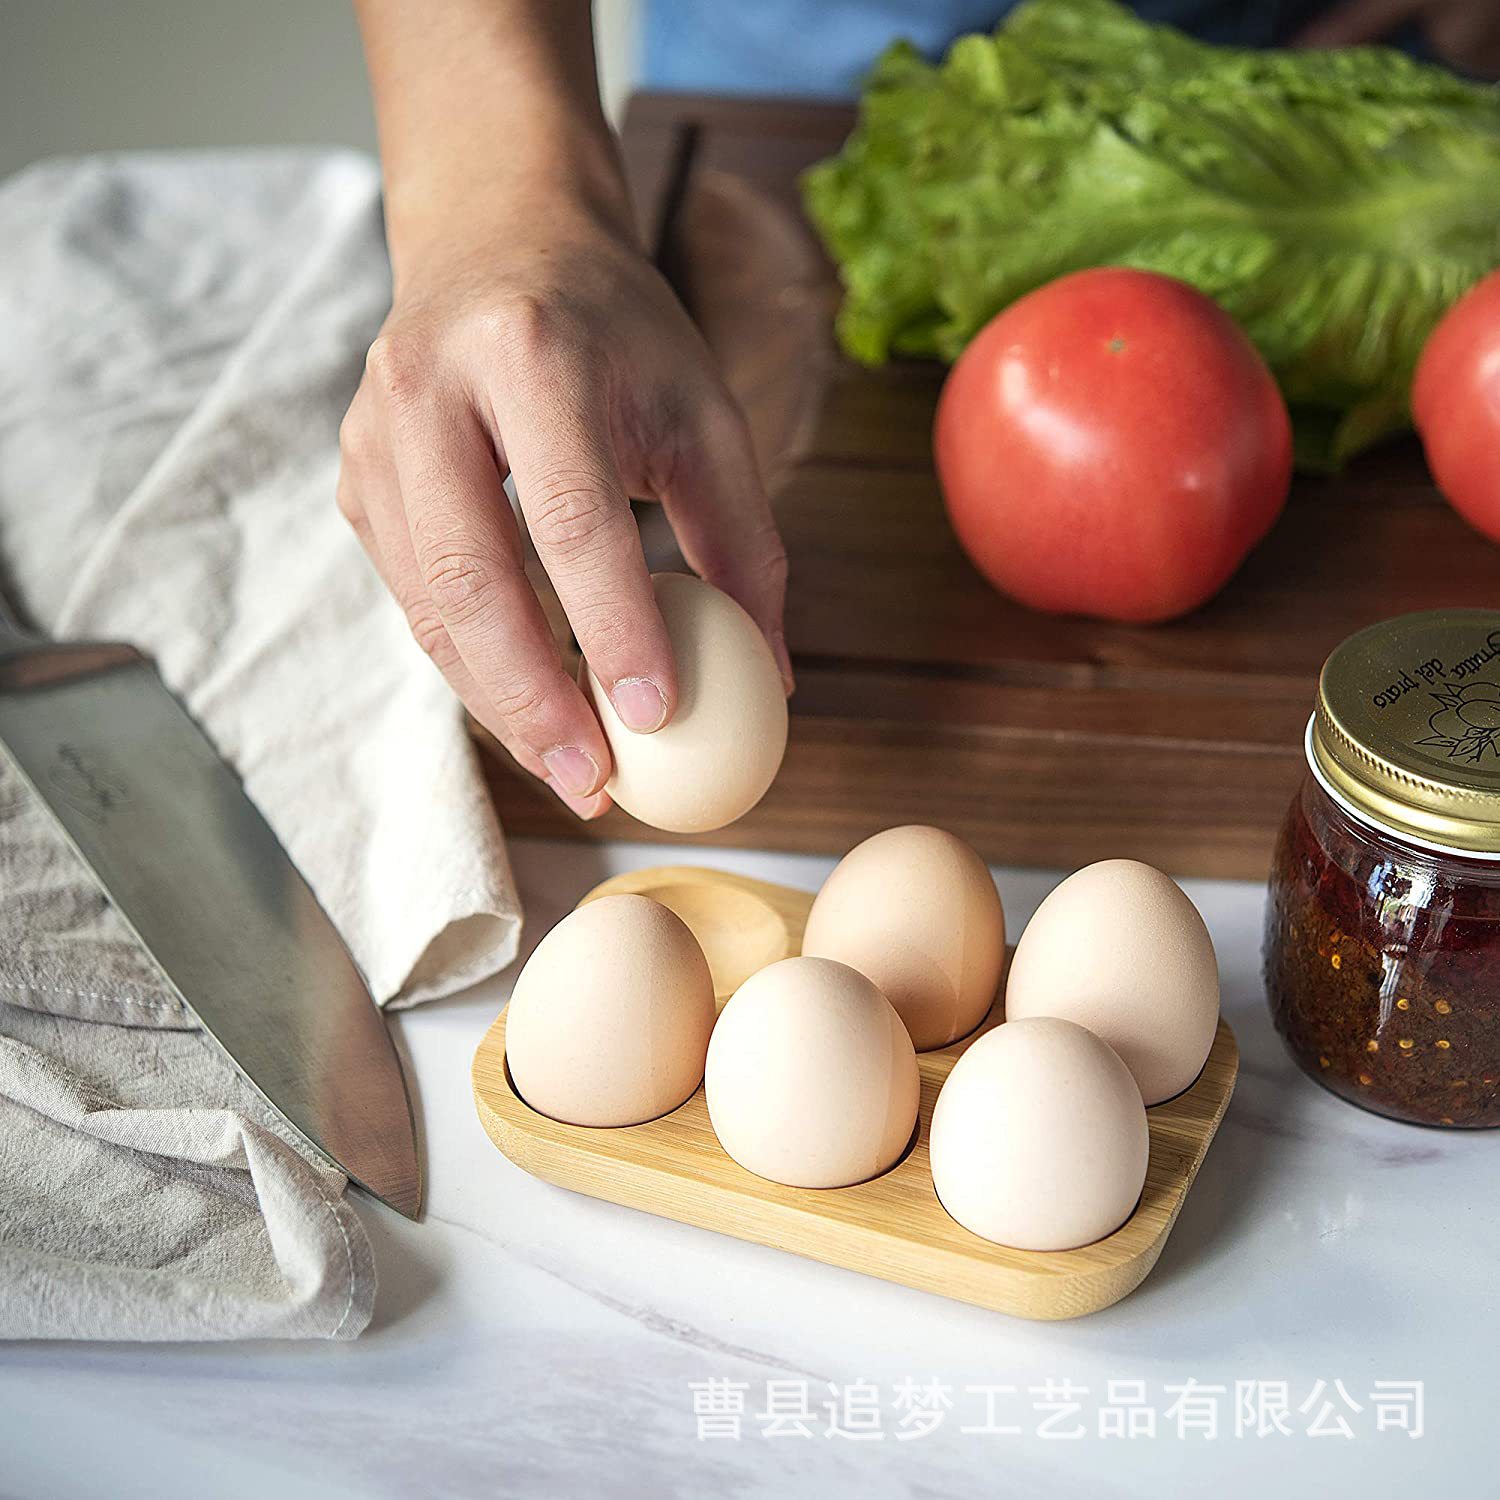 现货小架木制鸡蛋架餐小点心摆盘托盘家用厨房冰箱台面鸡蛋木托盘